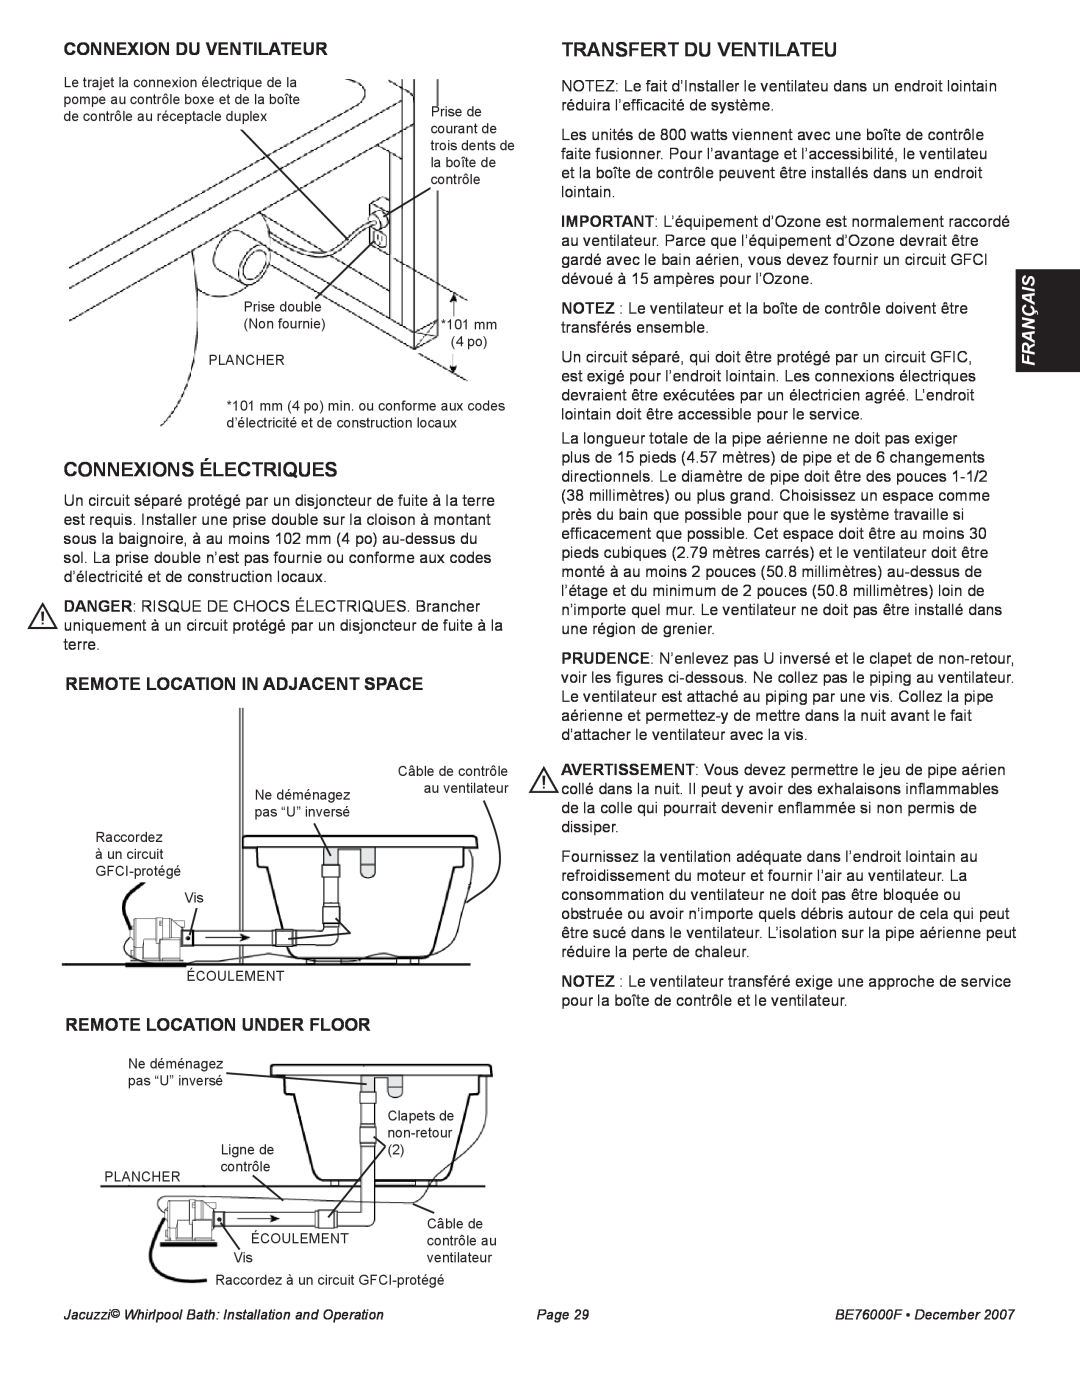 Jacuzzi LUXURY SERIES manual Transfert du Ventilateu, Connexions électriques, connexion du VENTILATEUR, Français 